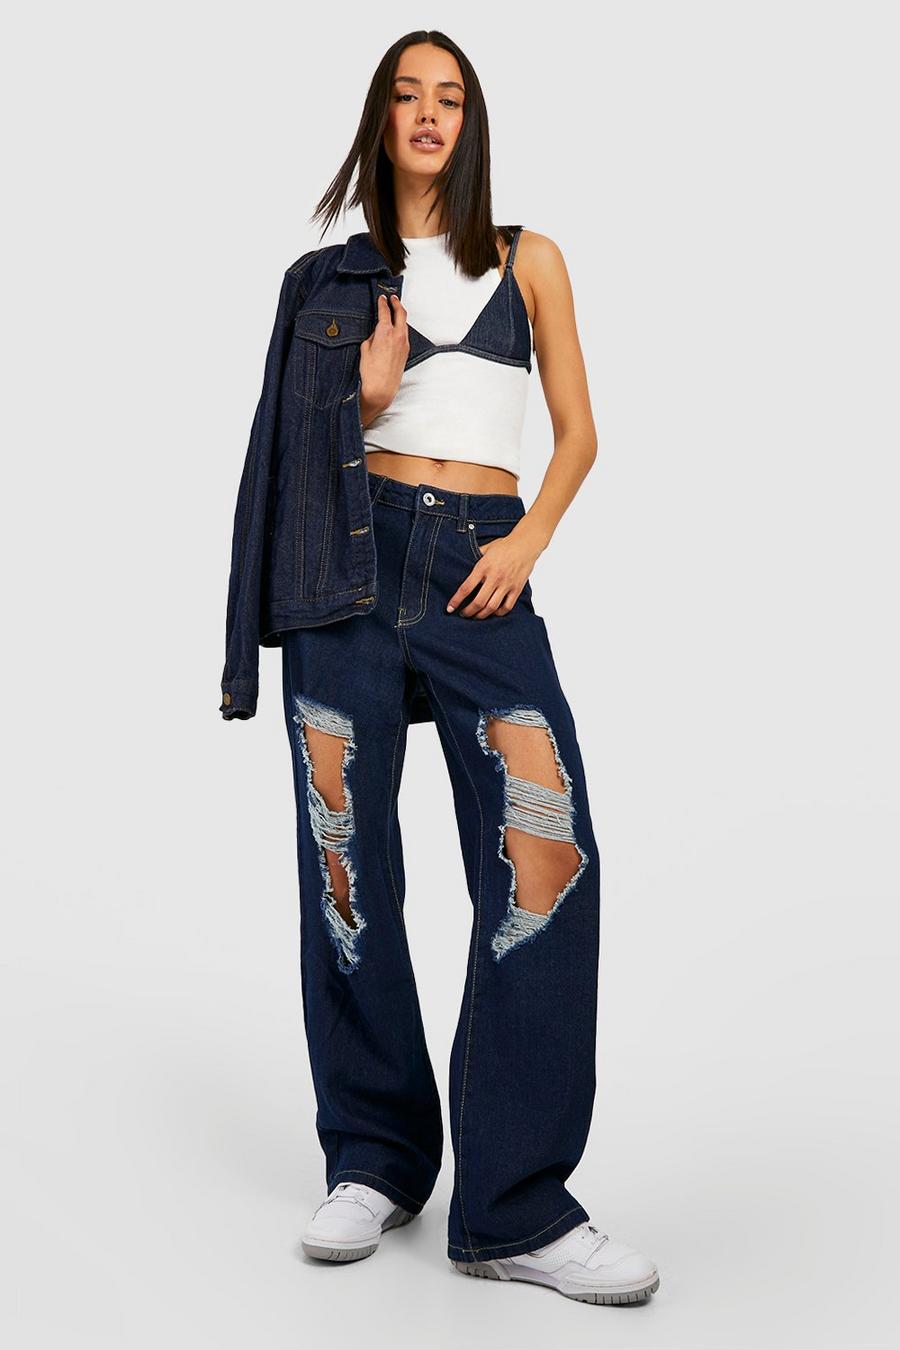 Indigo ג'ינס משופשף בגזרת בויפרנד low rise בייסיק